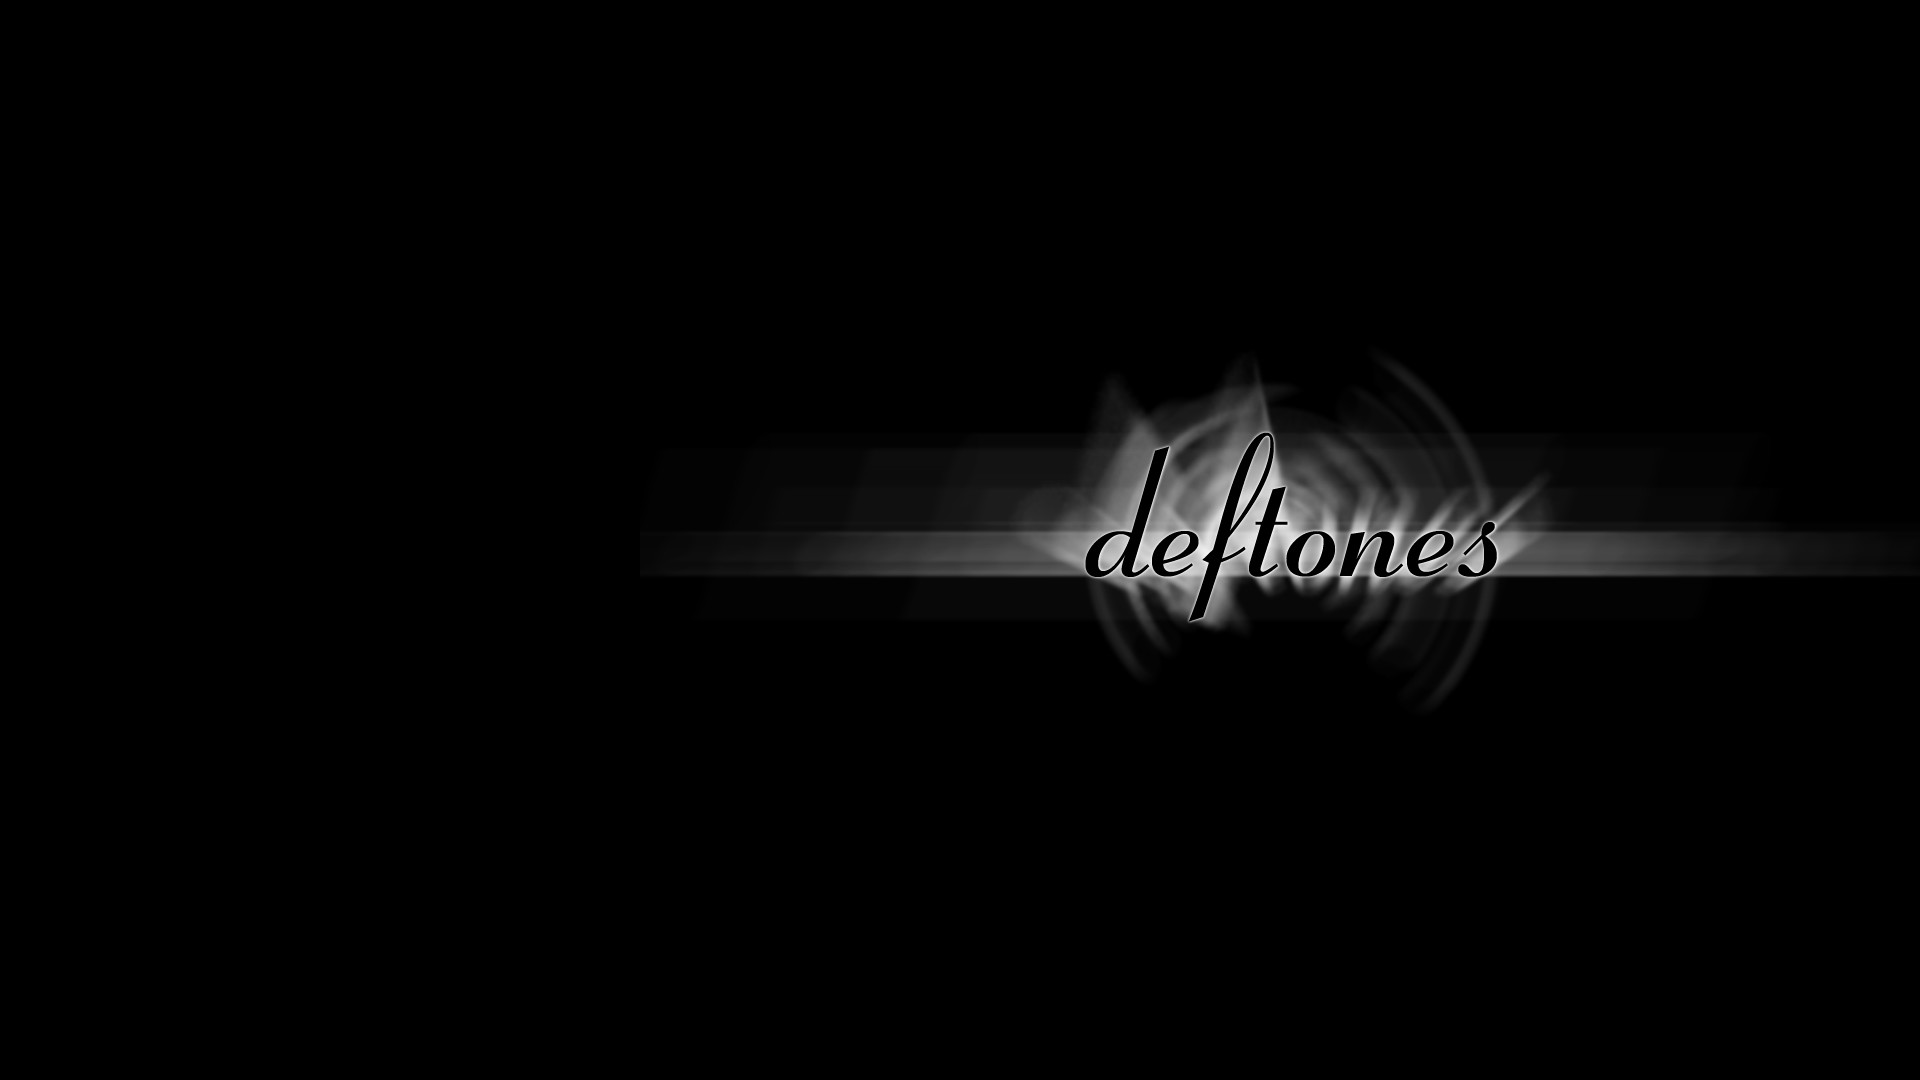 Images For > Deftones Wallpaper Hd 
 Data Src New Deftones - Darkness - HD Wallpaper 